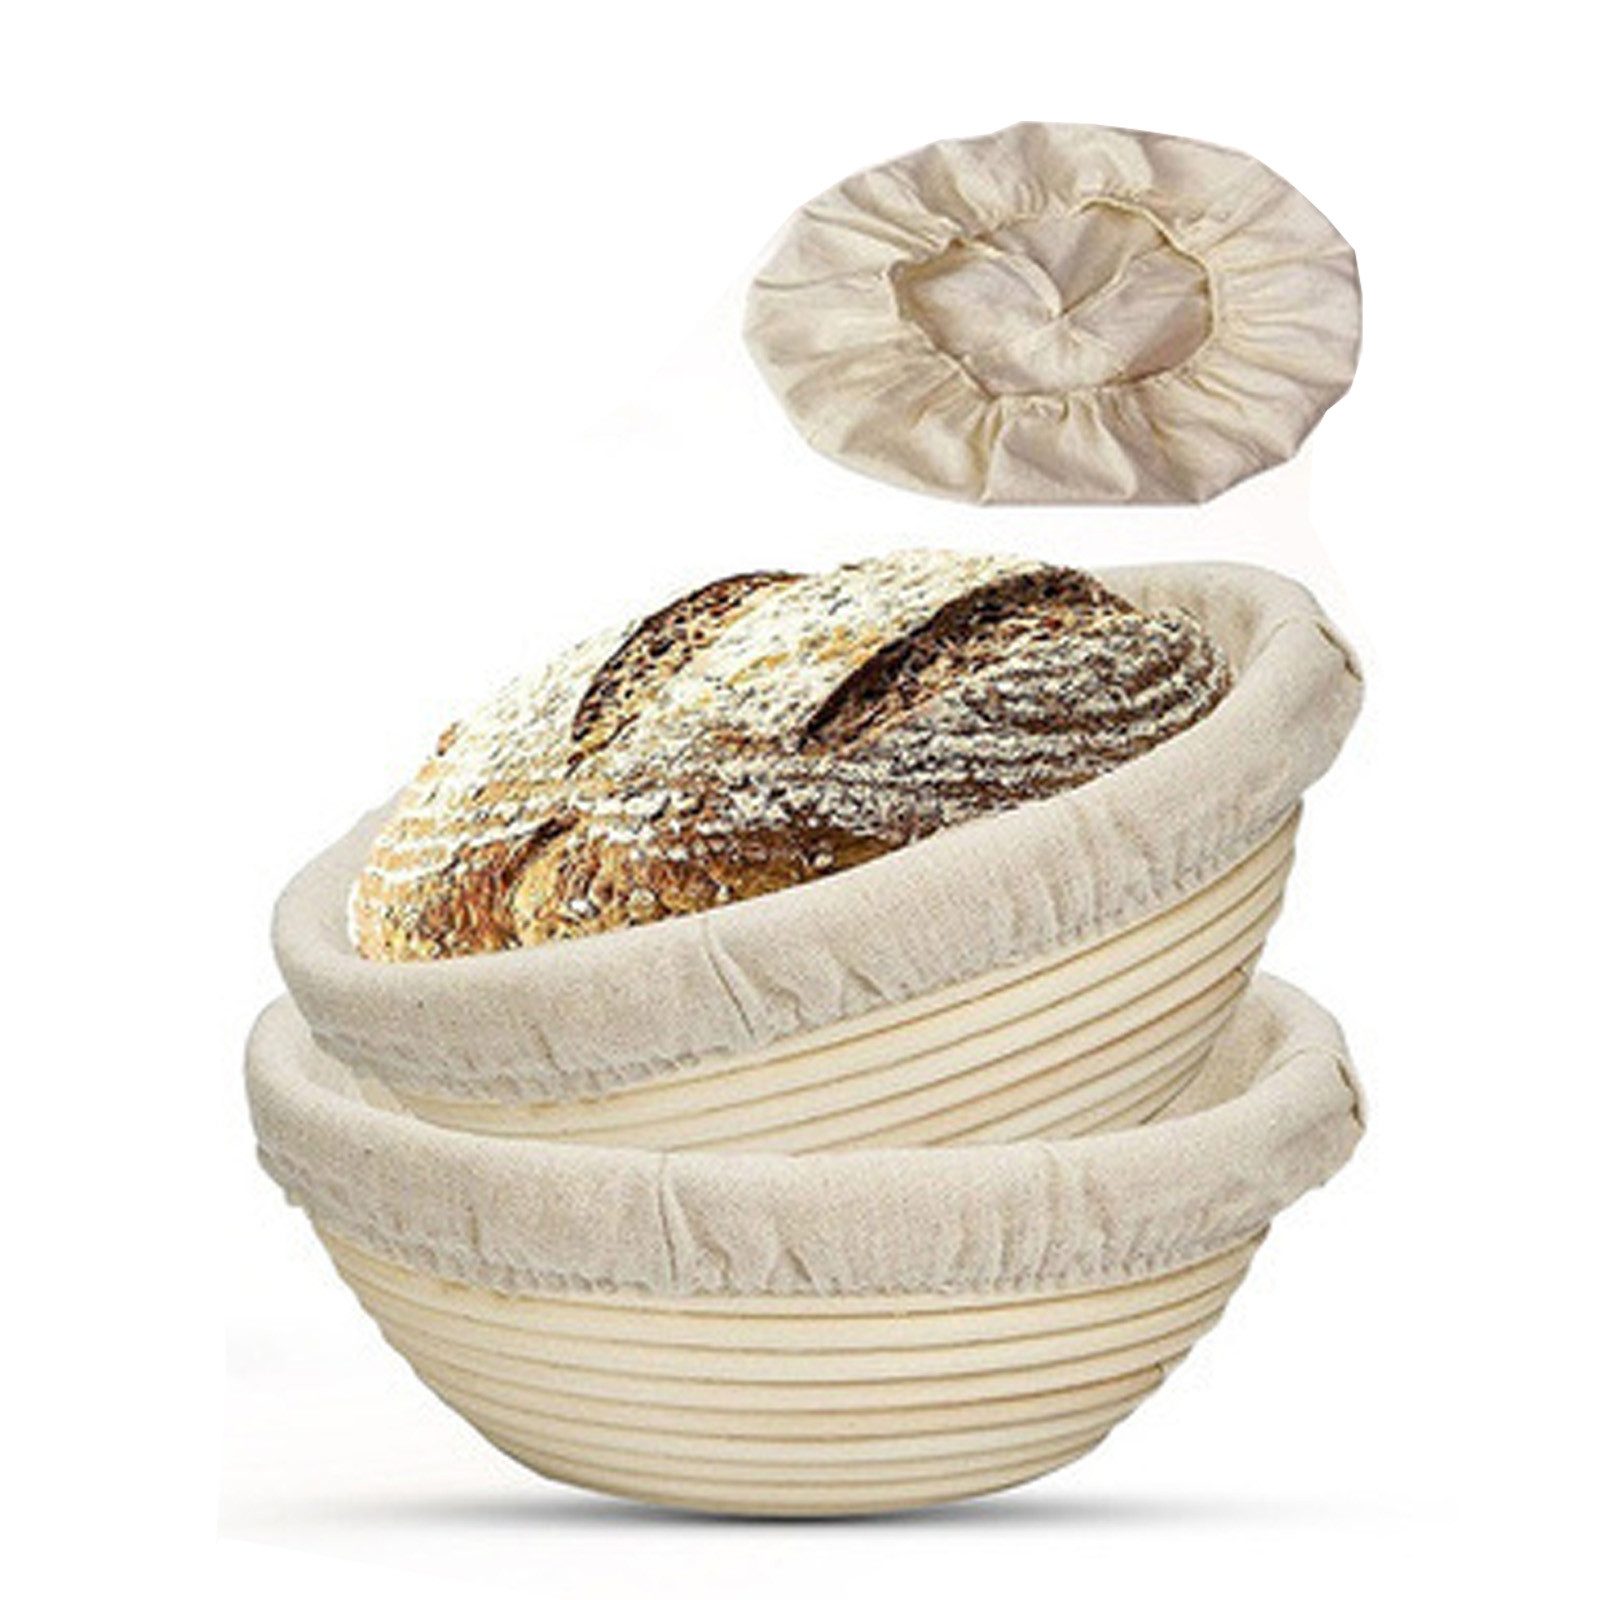 HIBNOPN Gärkorb Bäckerleinen Leinentuch mit Teigschaber für Brot Gärkorb 25cm, (2-tlg)